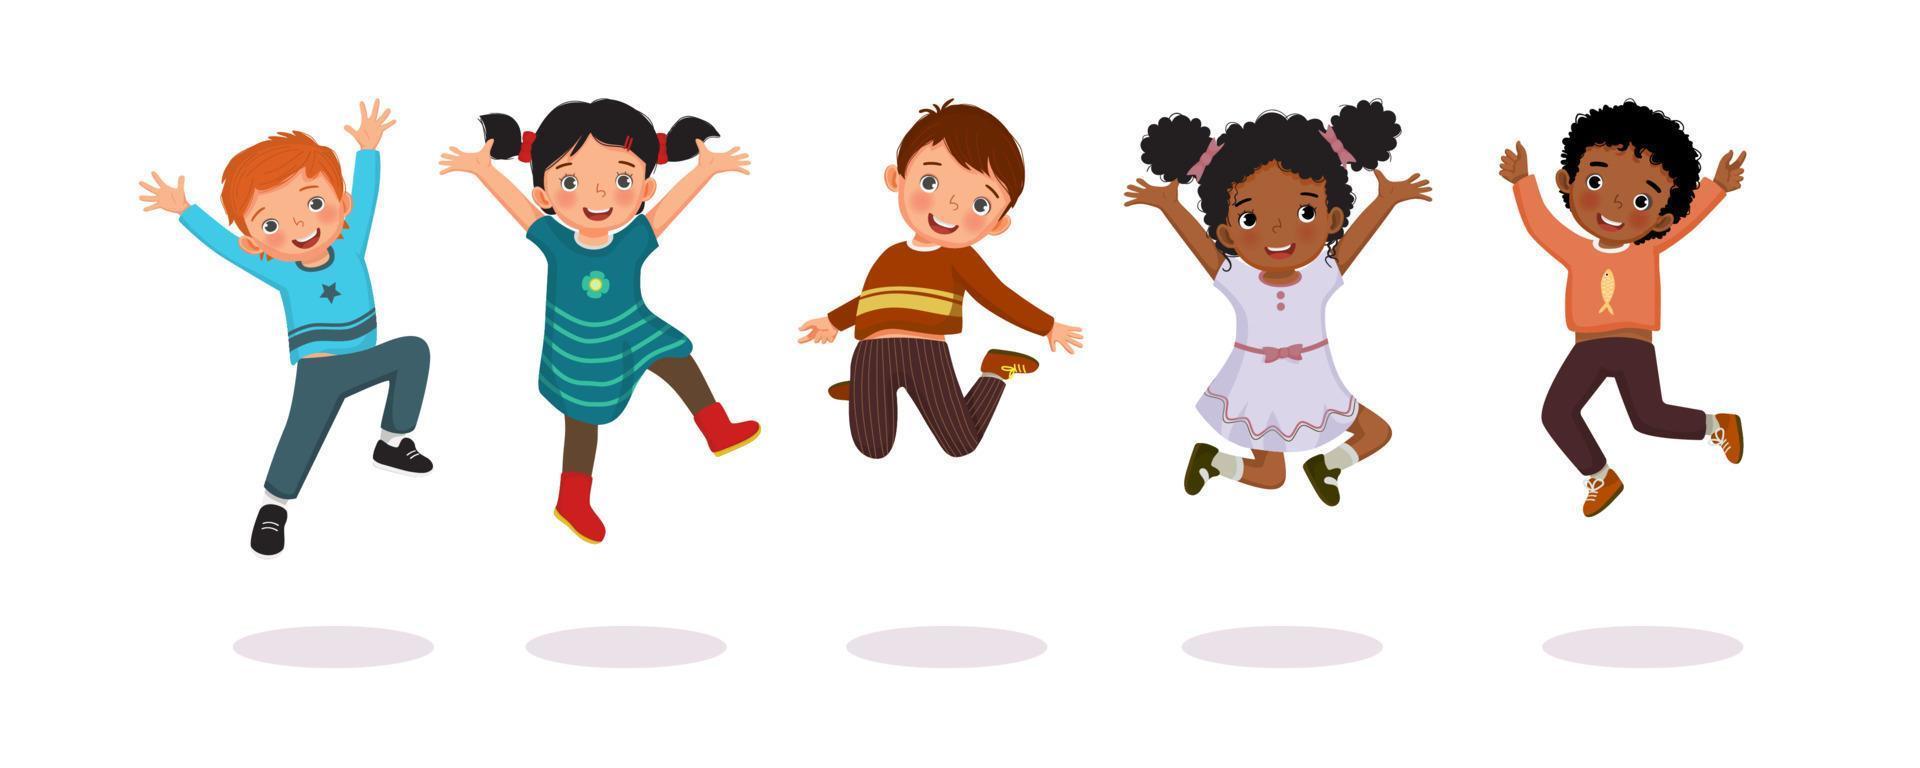 grupp glada barn hoppar tillsammans glatt med händerna upp i luften. vektor av aktiva små barn, pojkar och flickor, ha kul visar olika action poser.